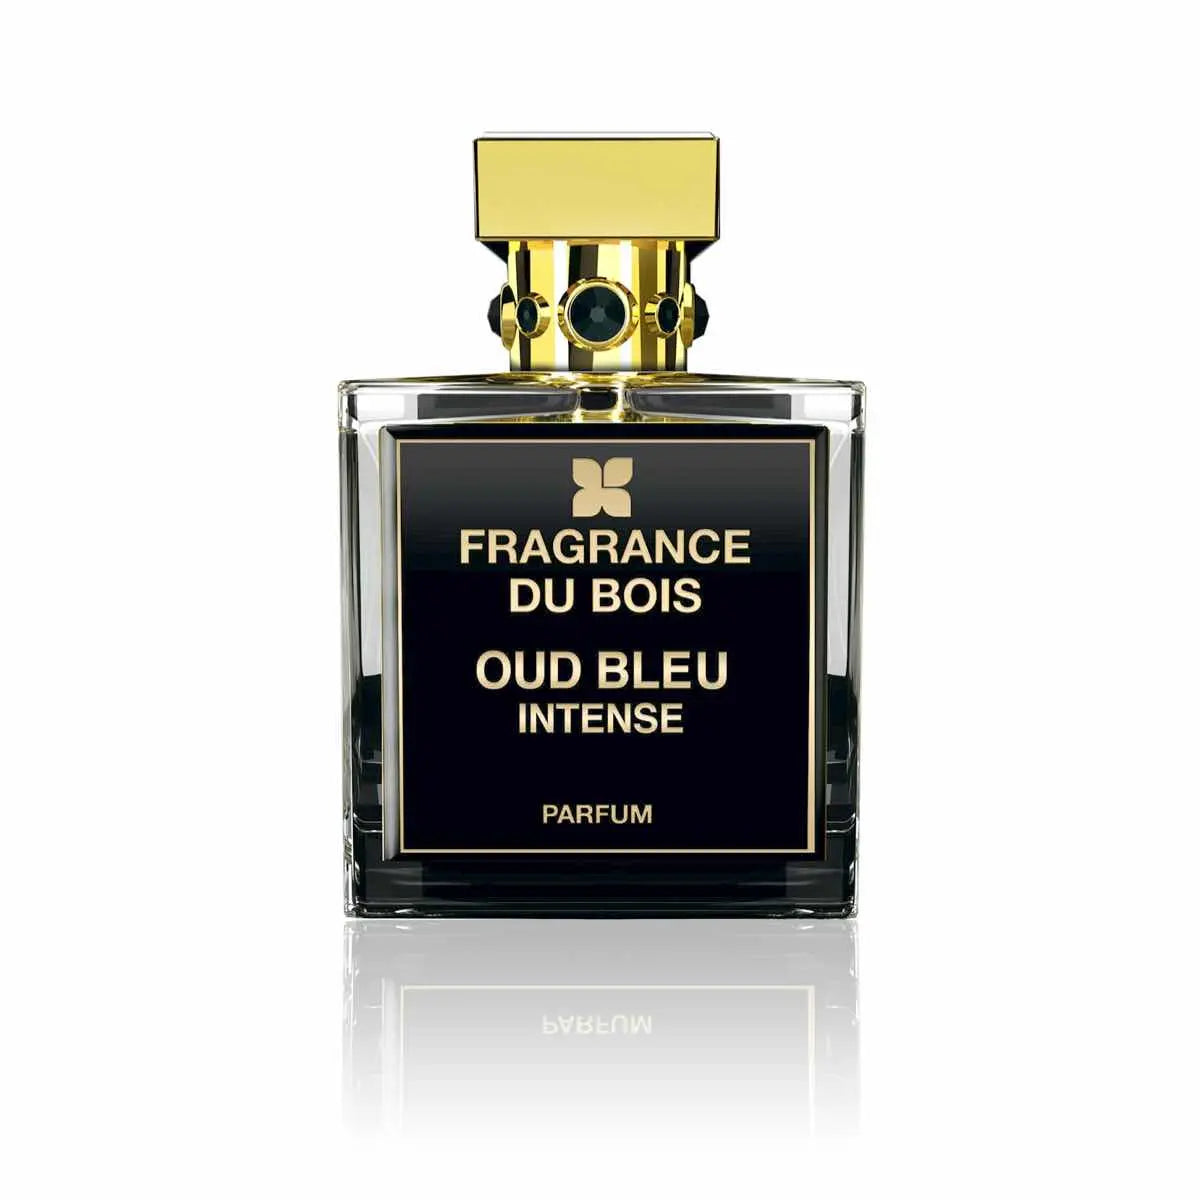 Fragrance du bois Oud Bleu 浓烈香水 - 100 毫升